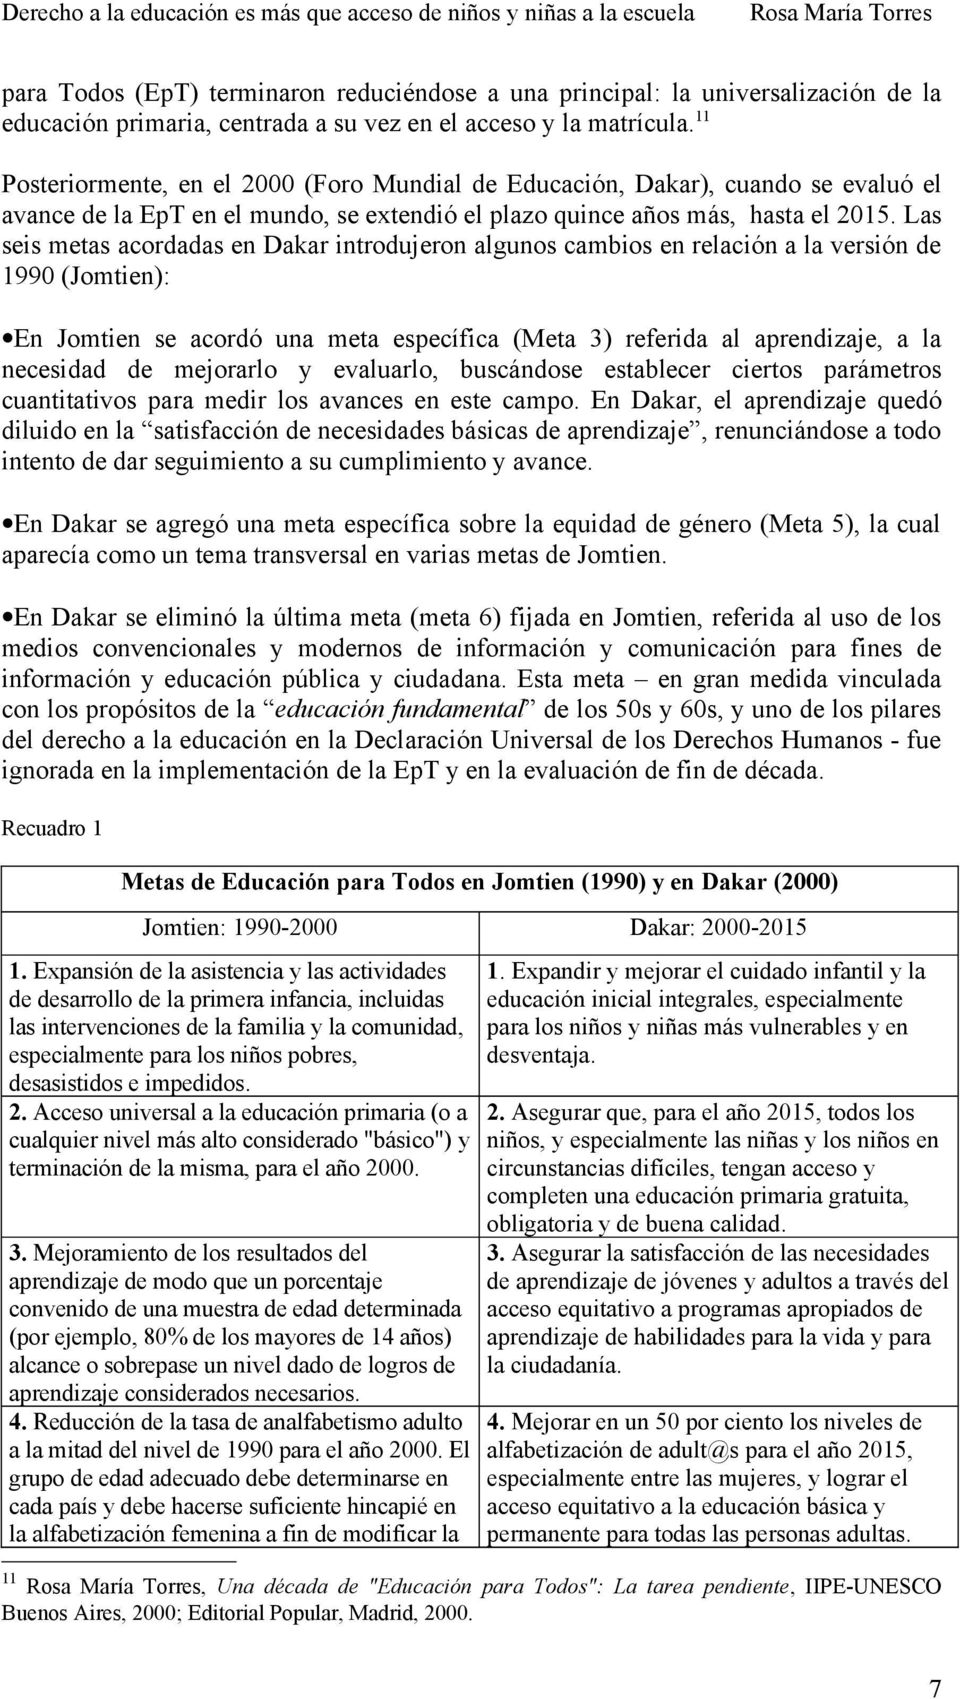 Las seis metas acordadas en Dakar introdujeron algunos cambios en relación a la versión de 1990 (Jomtien): En Jomtien se acordó una meta específica (Meta 3) referida al aprendizaje, a la necesidad de